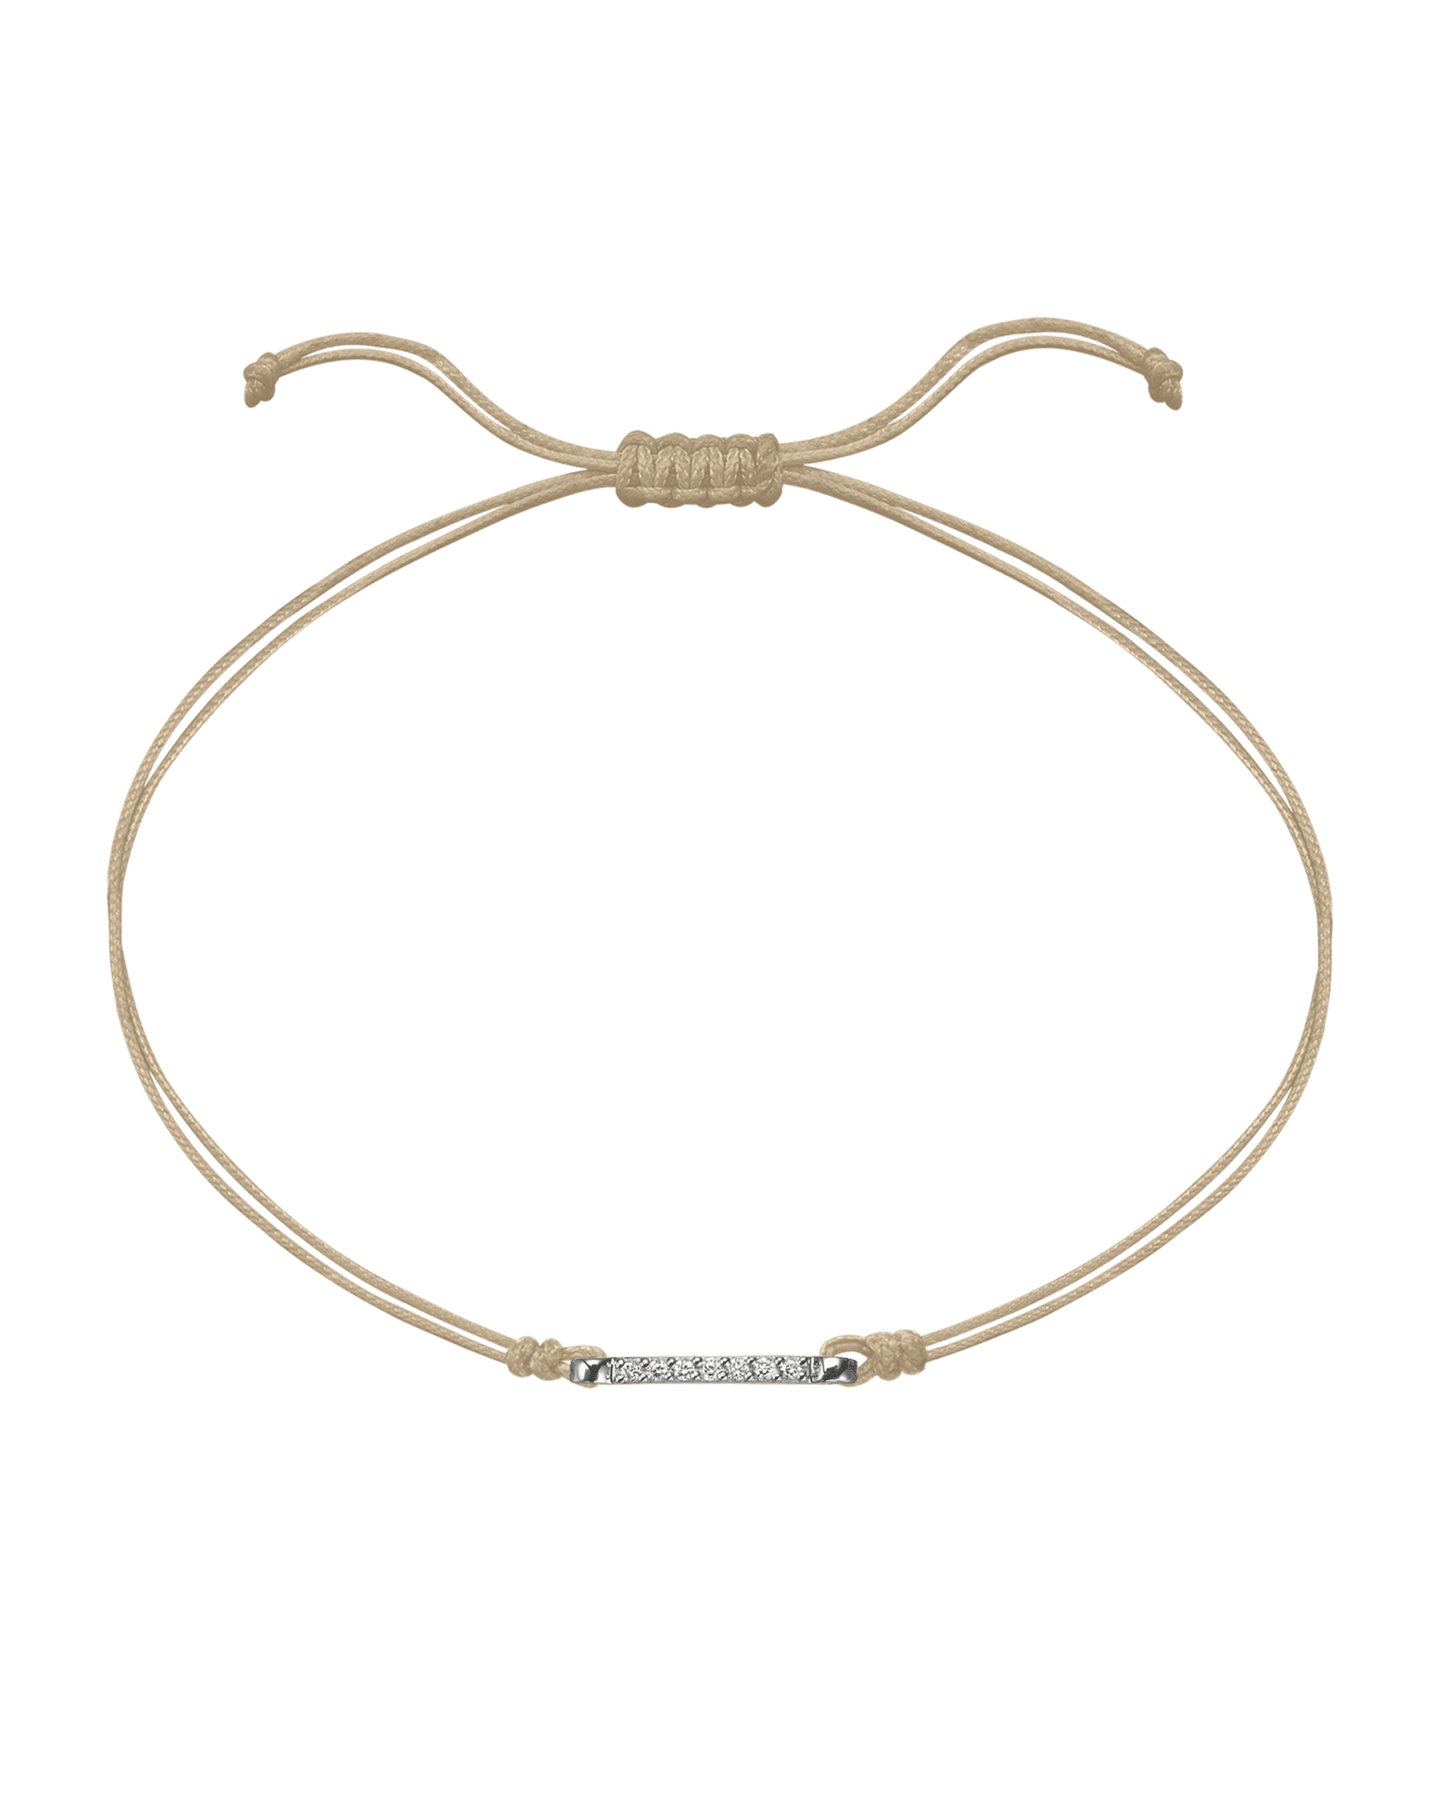 The Diamond Bar String Of Love - 14K White Gold Bracelet 14K Solid Gold Beige 